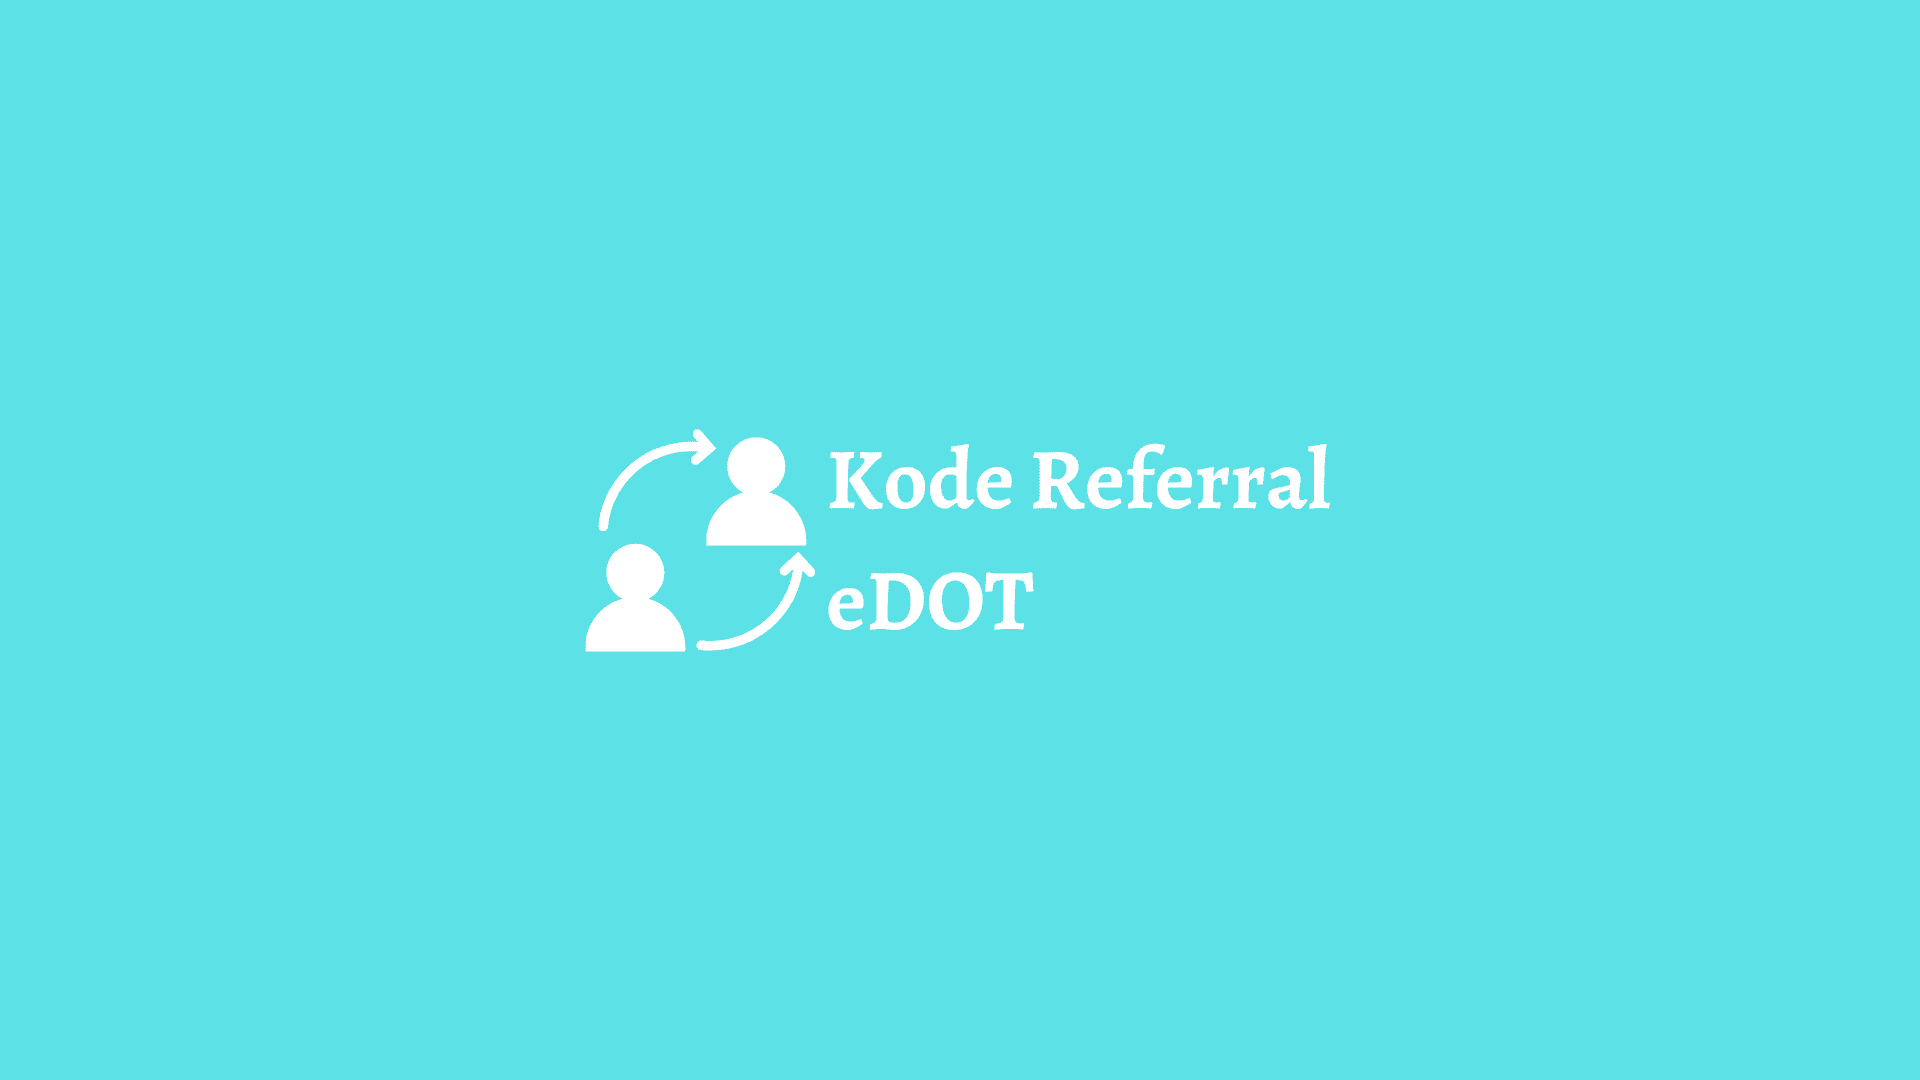 kode referral edot